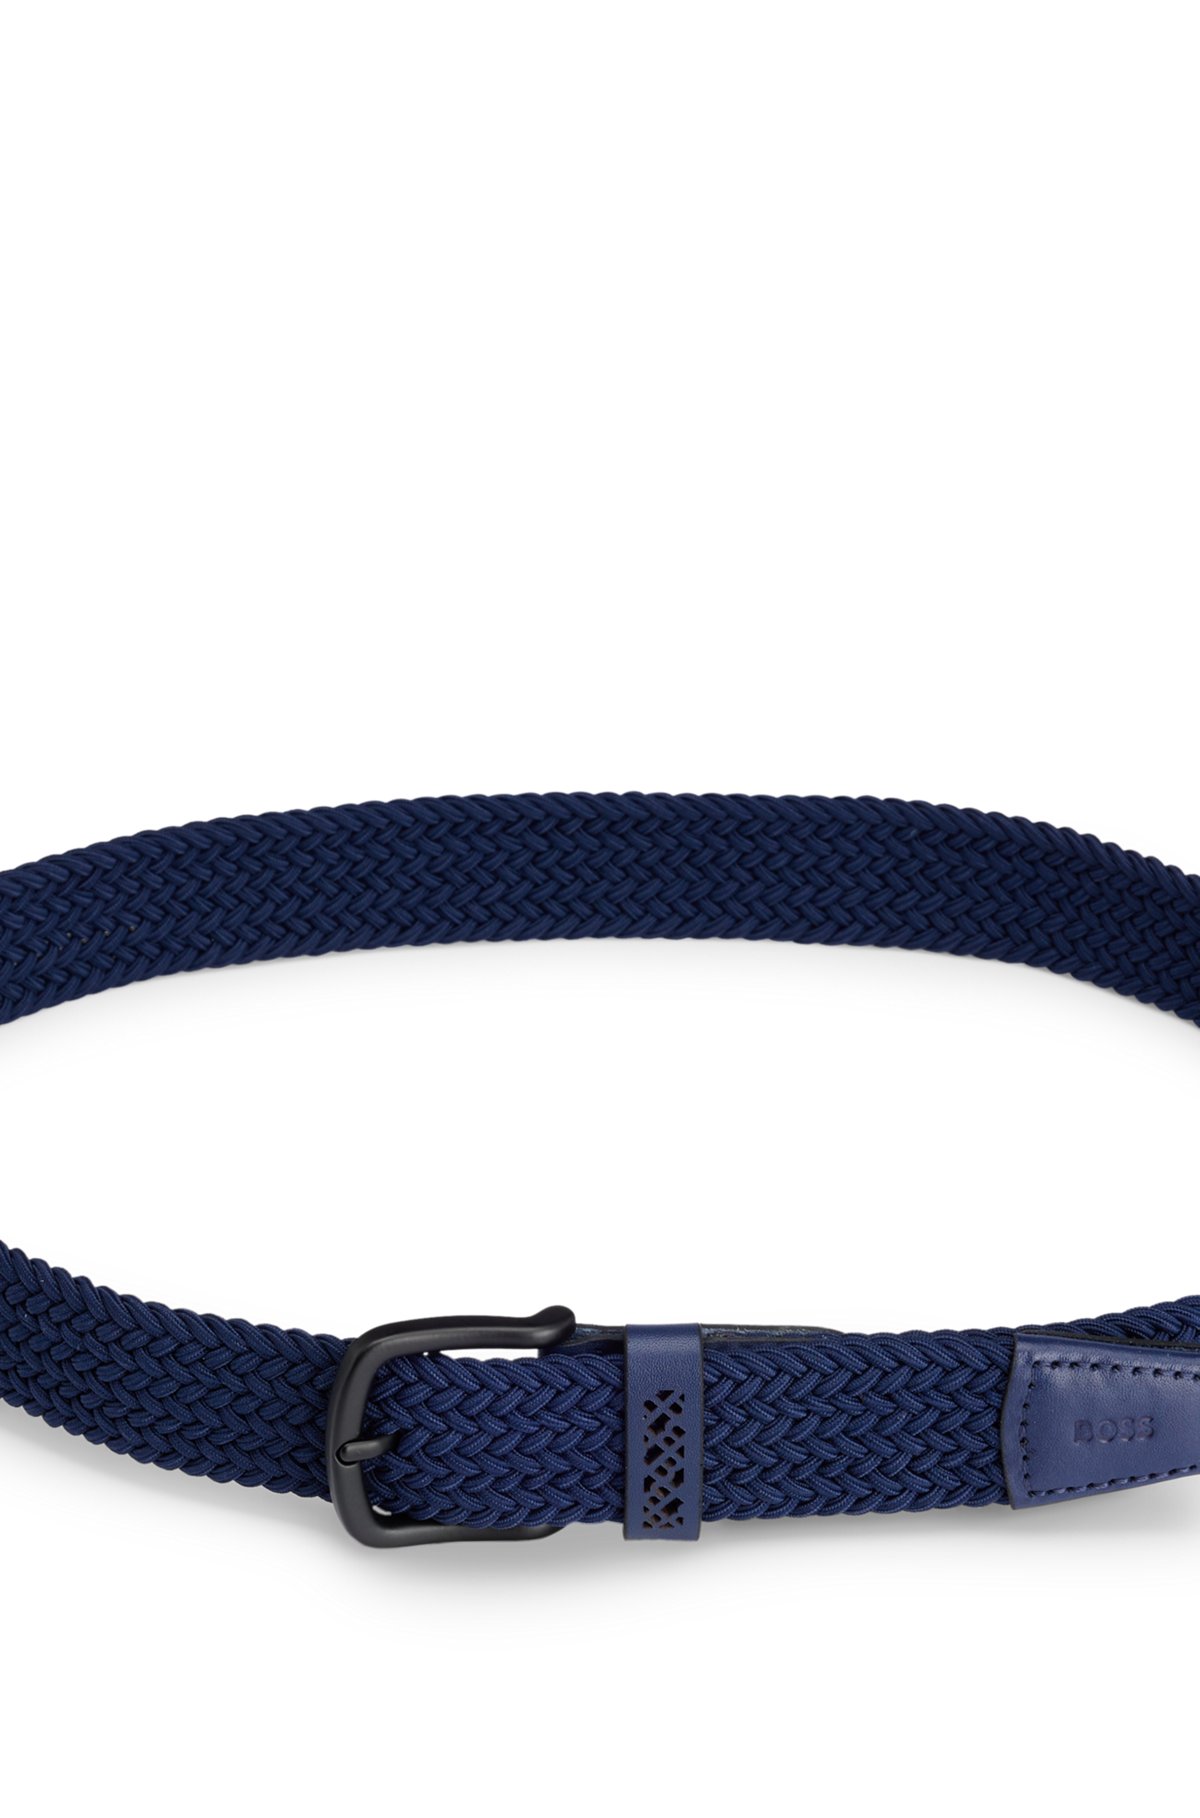 Cinturón de tela con ribetes de piel, Azul oscuro